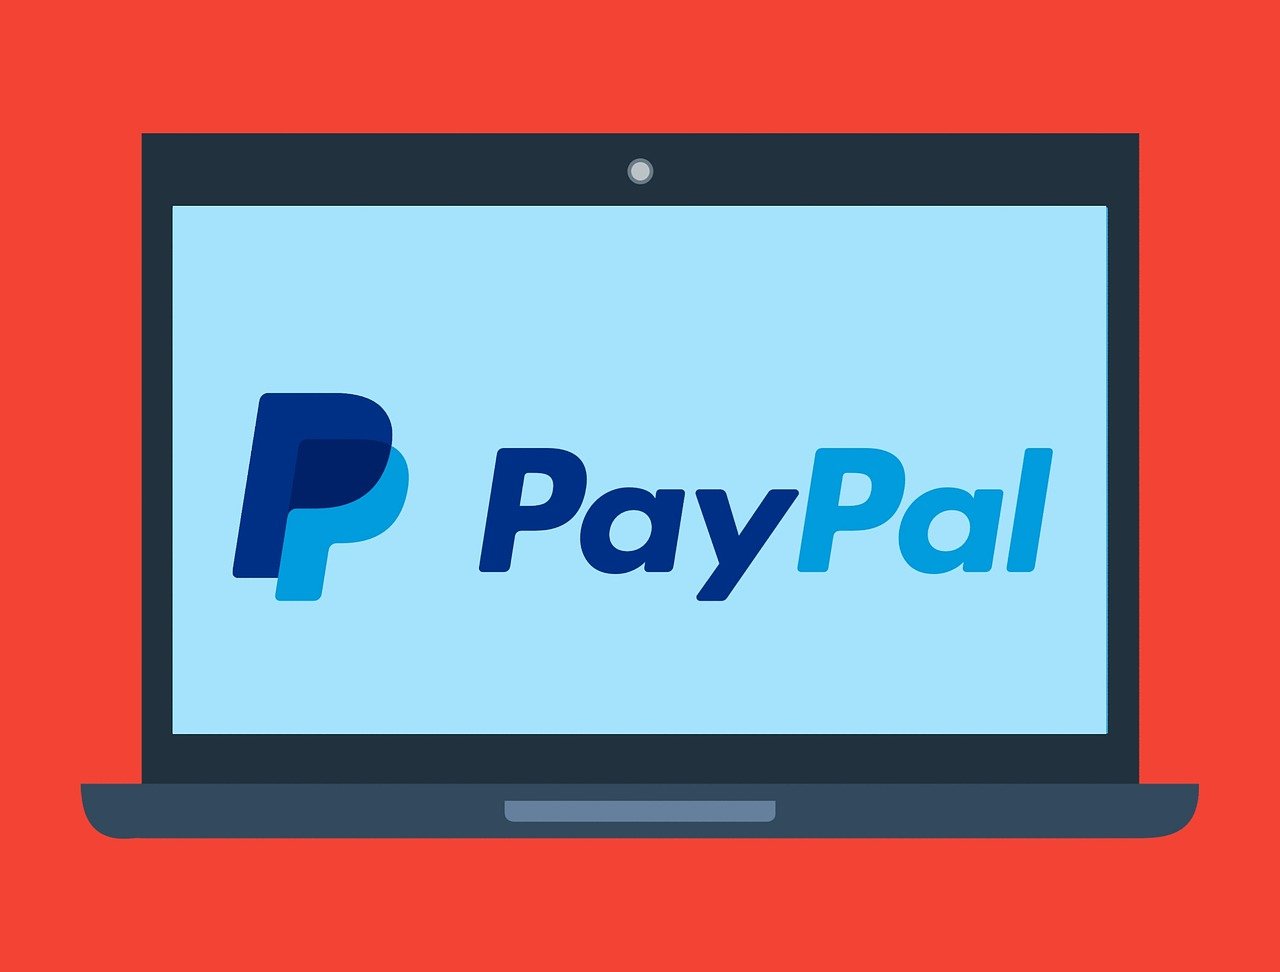 Arbeitet PayPal an einem eigenen Stablecoin?